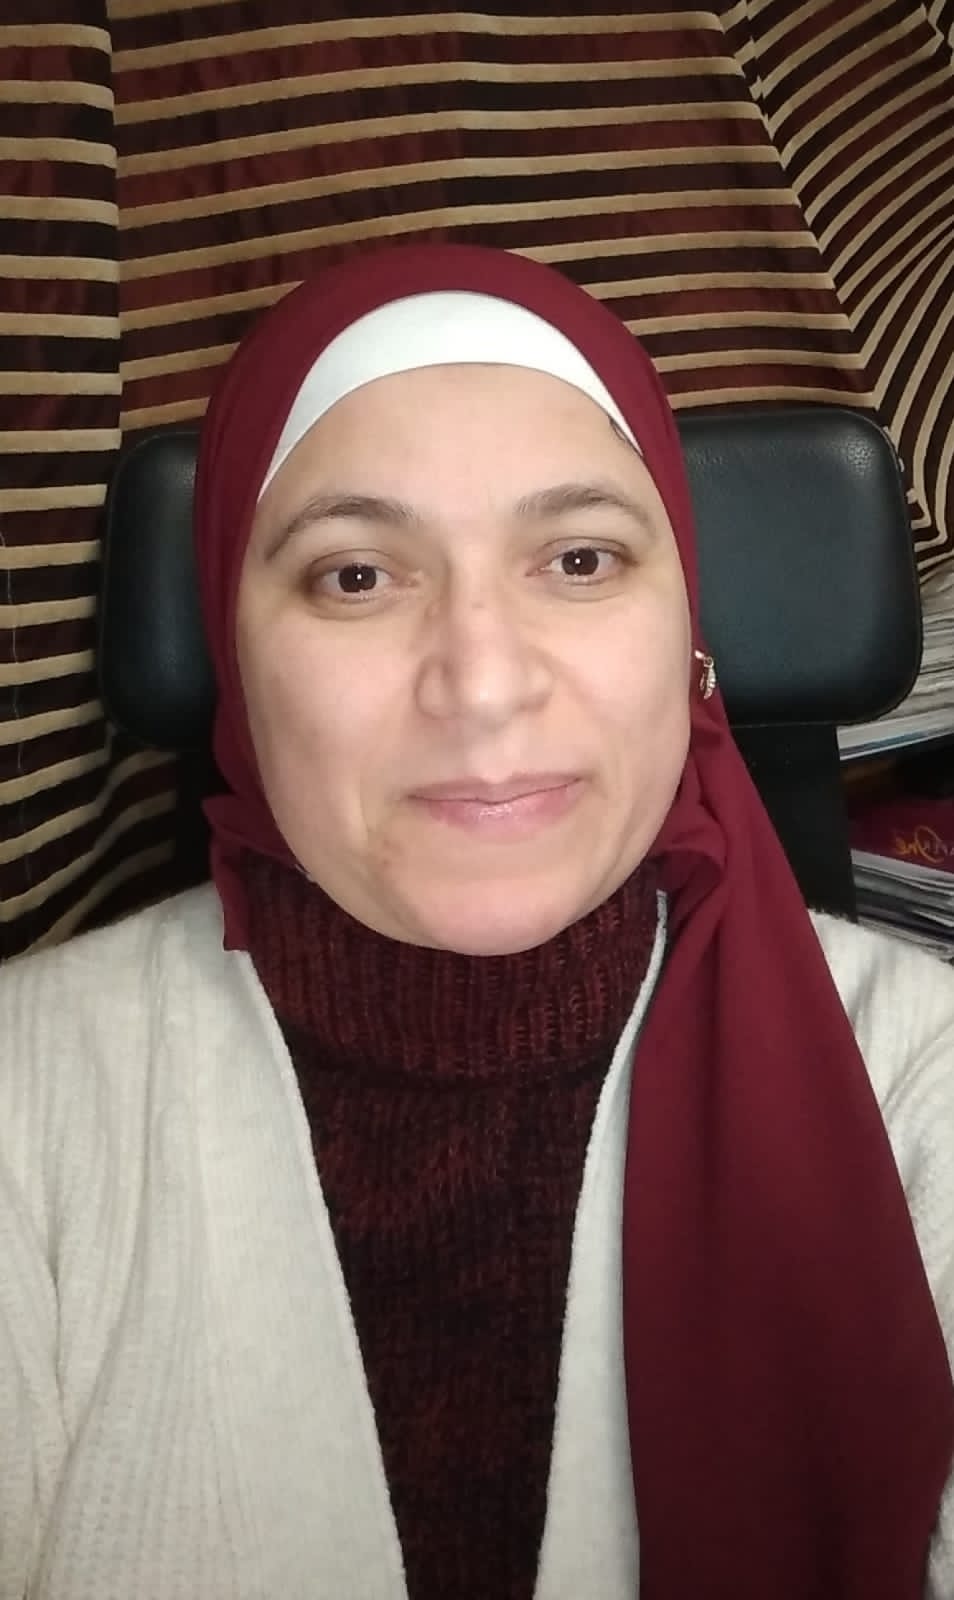 الدكتورة إيمان المرسي رئيسًا لقسم طب الأطفال وحديثي الولادة بكلية طب بنات الأزهر بالقاهرة